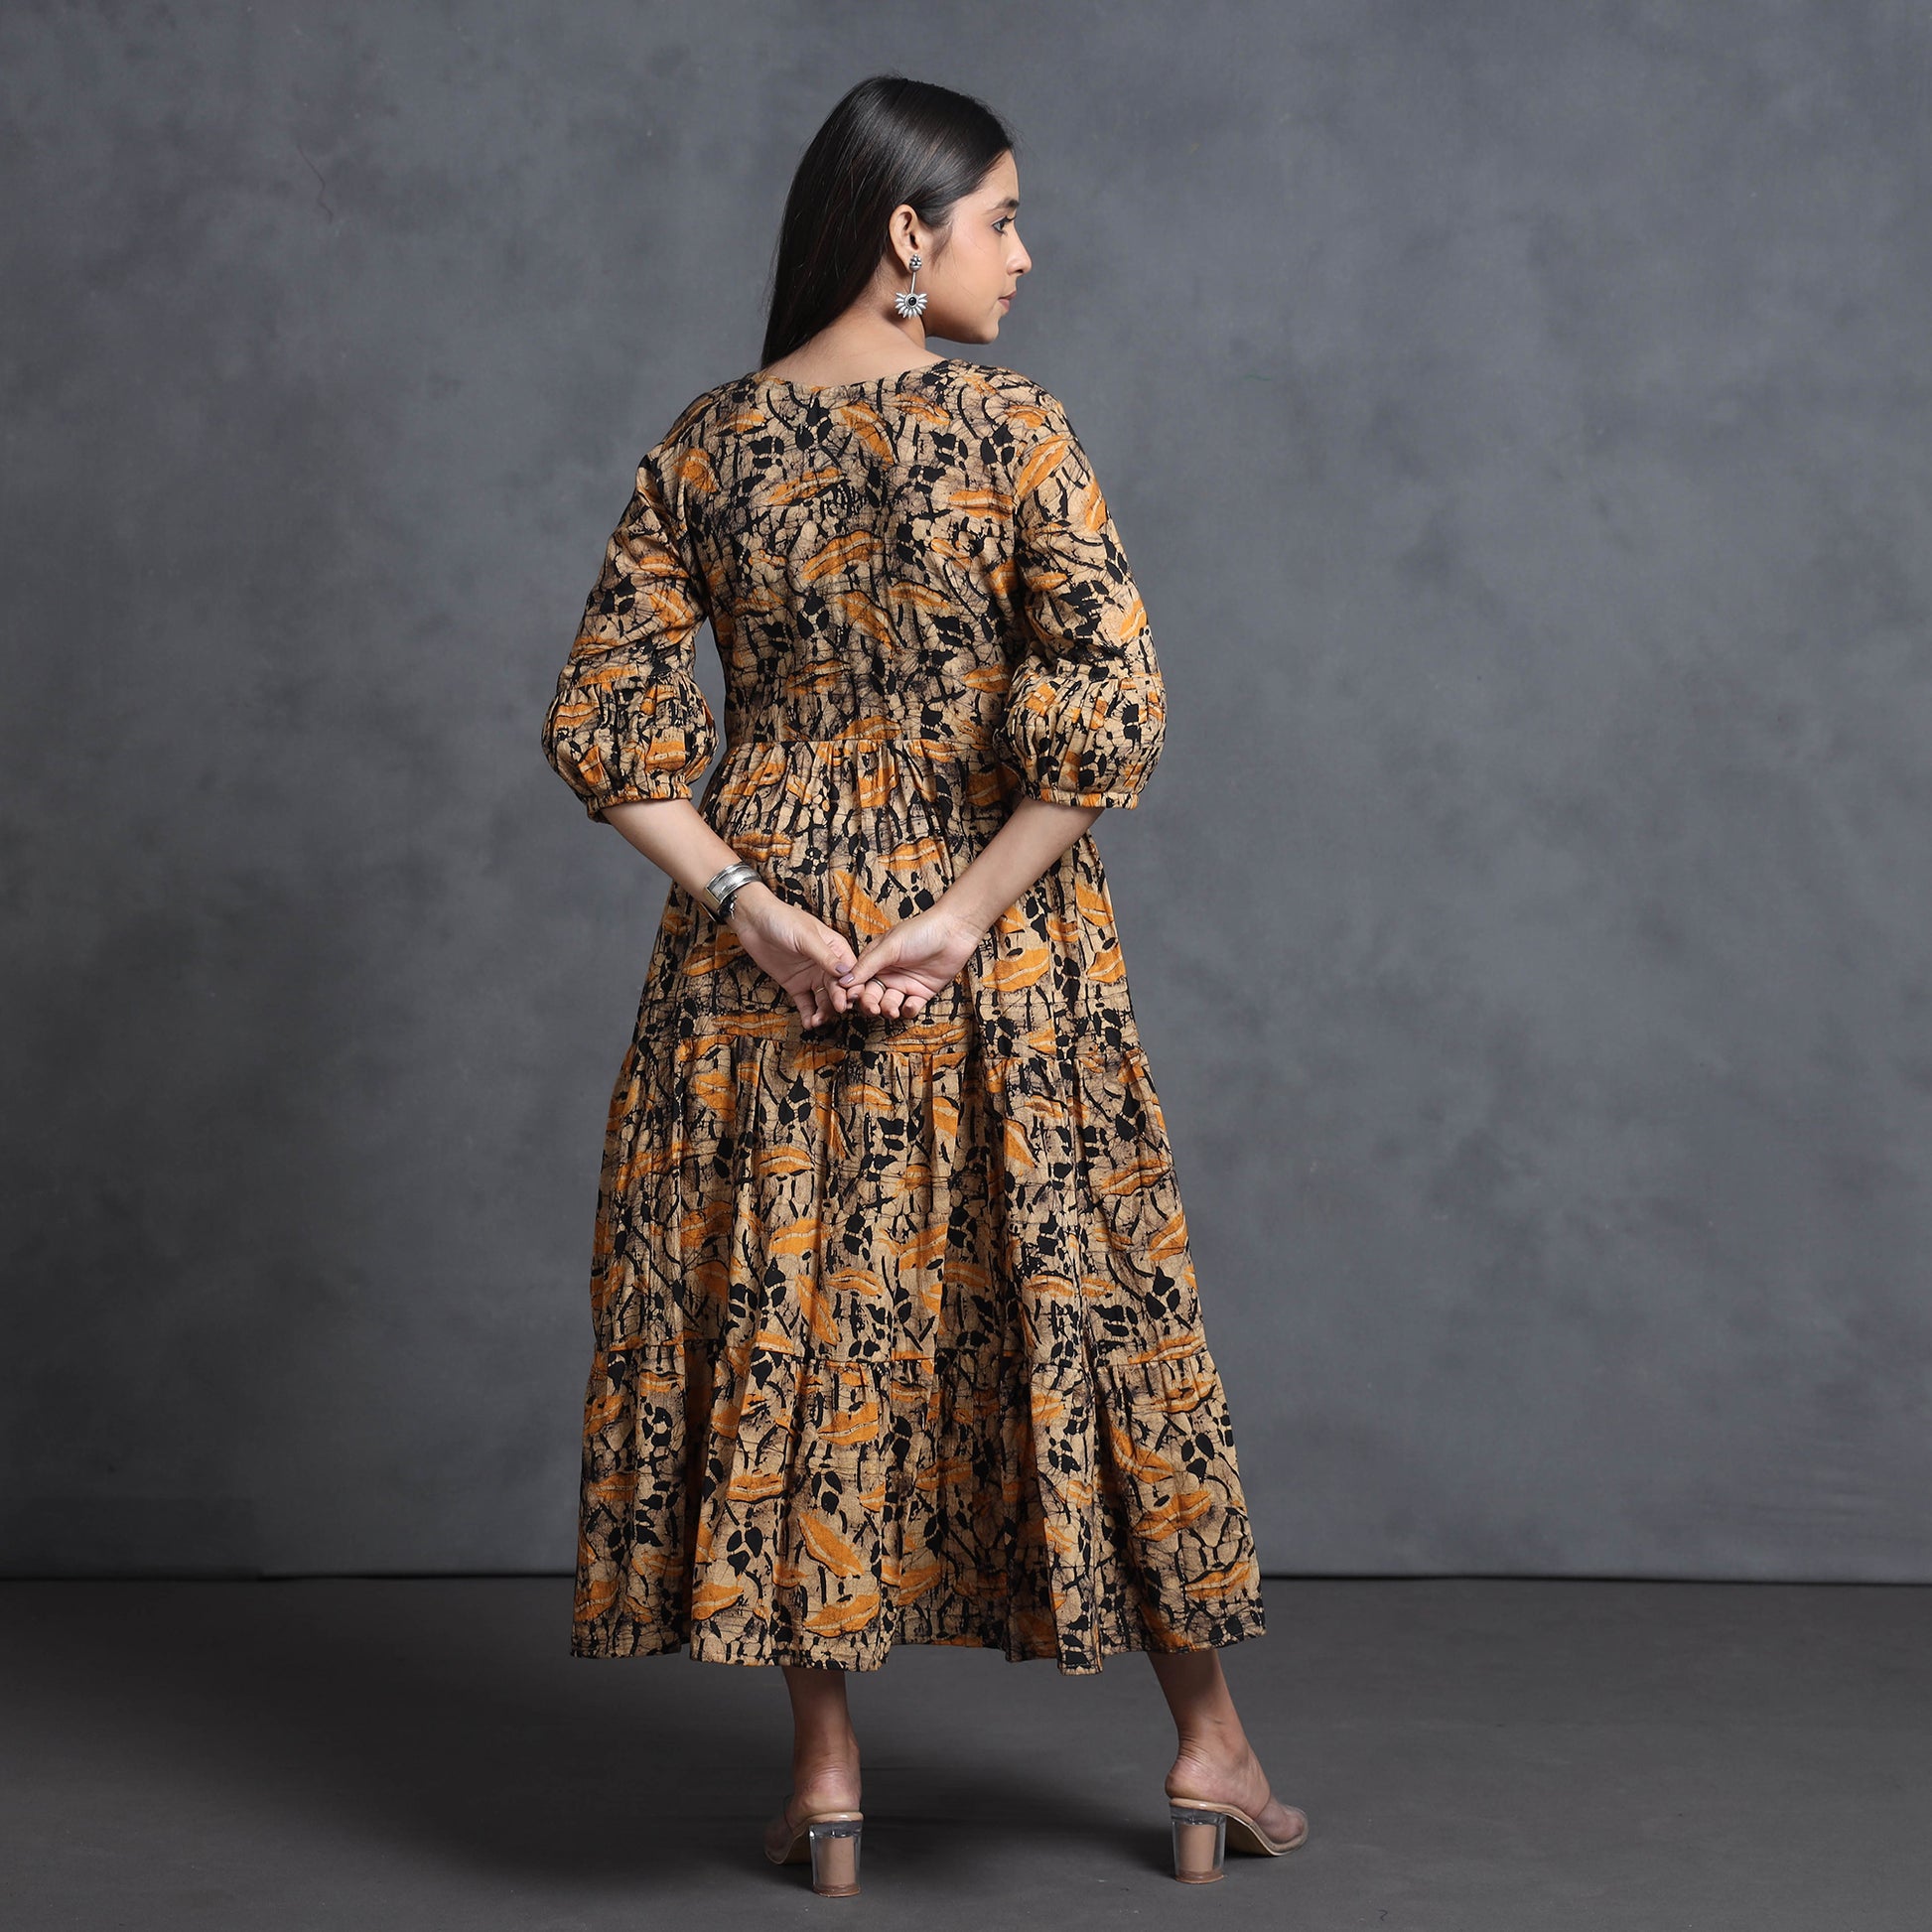 batik print dress
